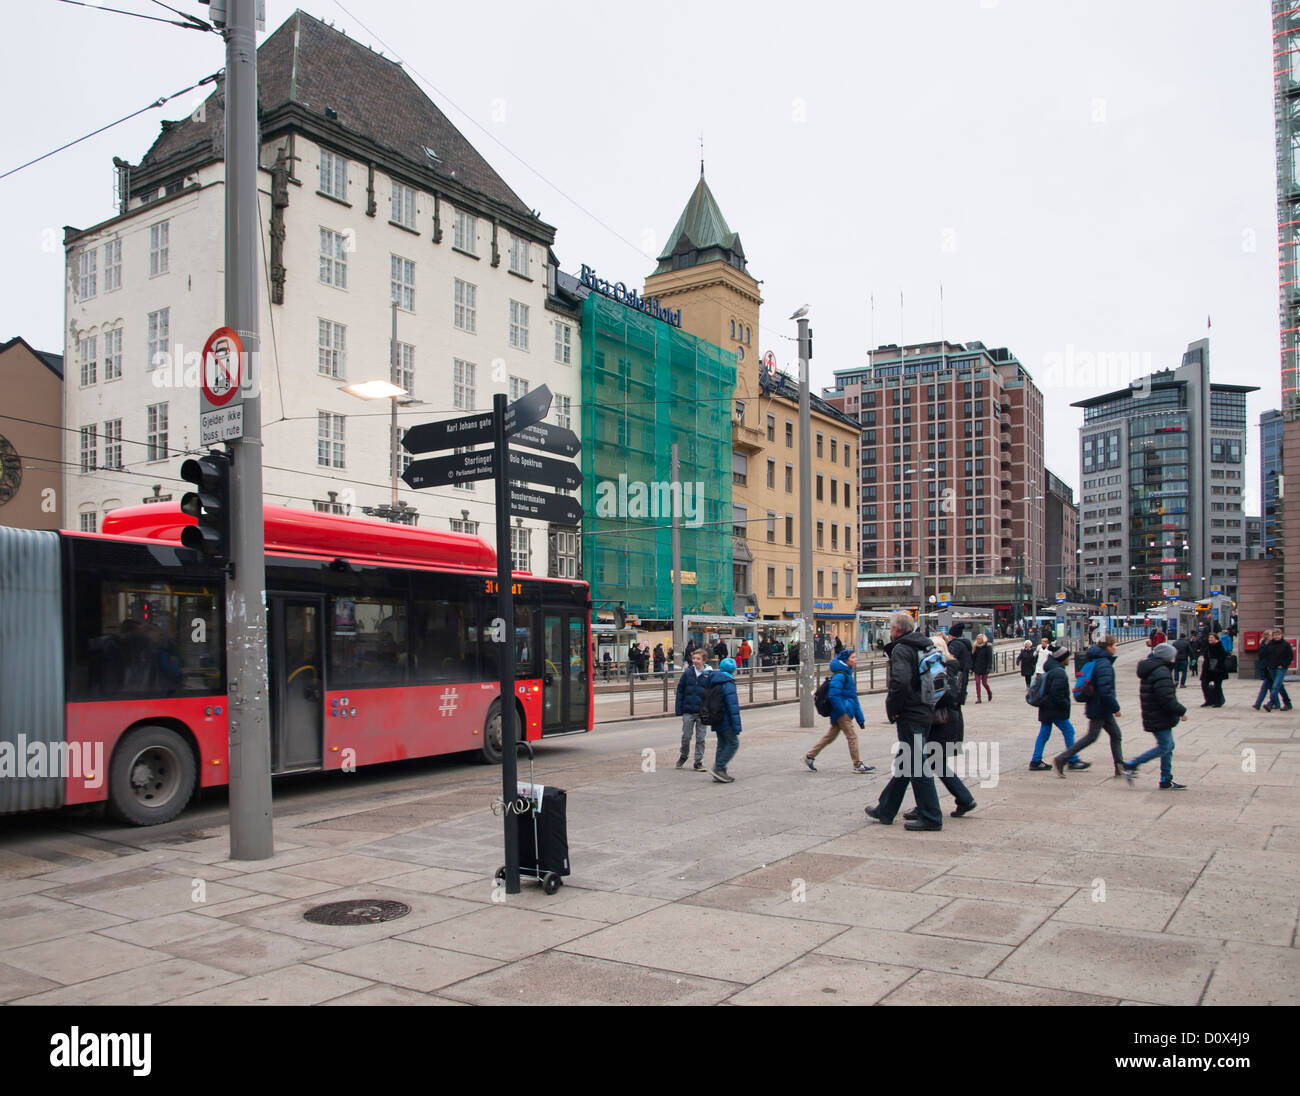 Jernbanetorget Oslo Norvegia, la piazza dove tutti i mezzi di trasporto pubblici possono essere trovati; stazione bus tram e metropolitana Foto Stock